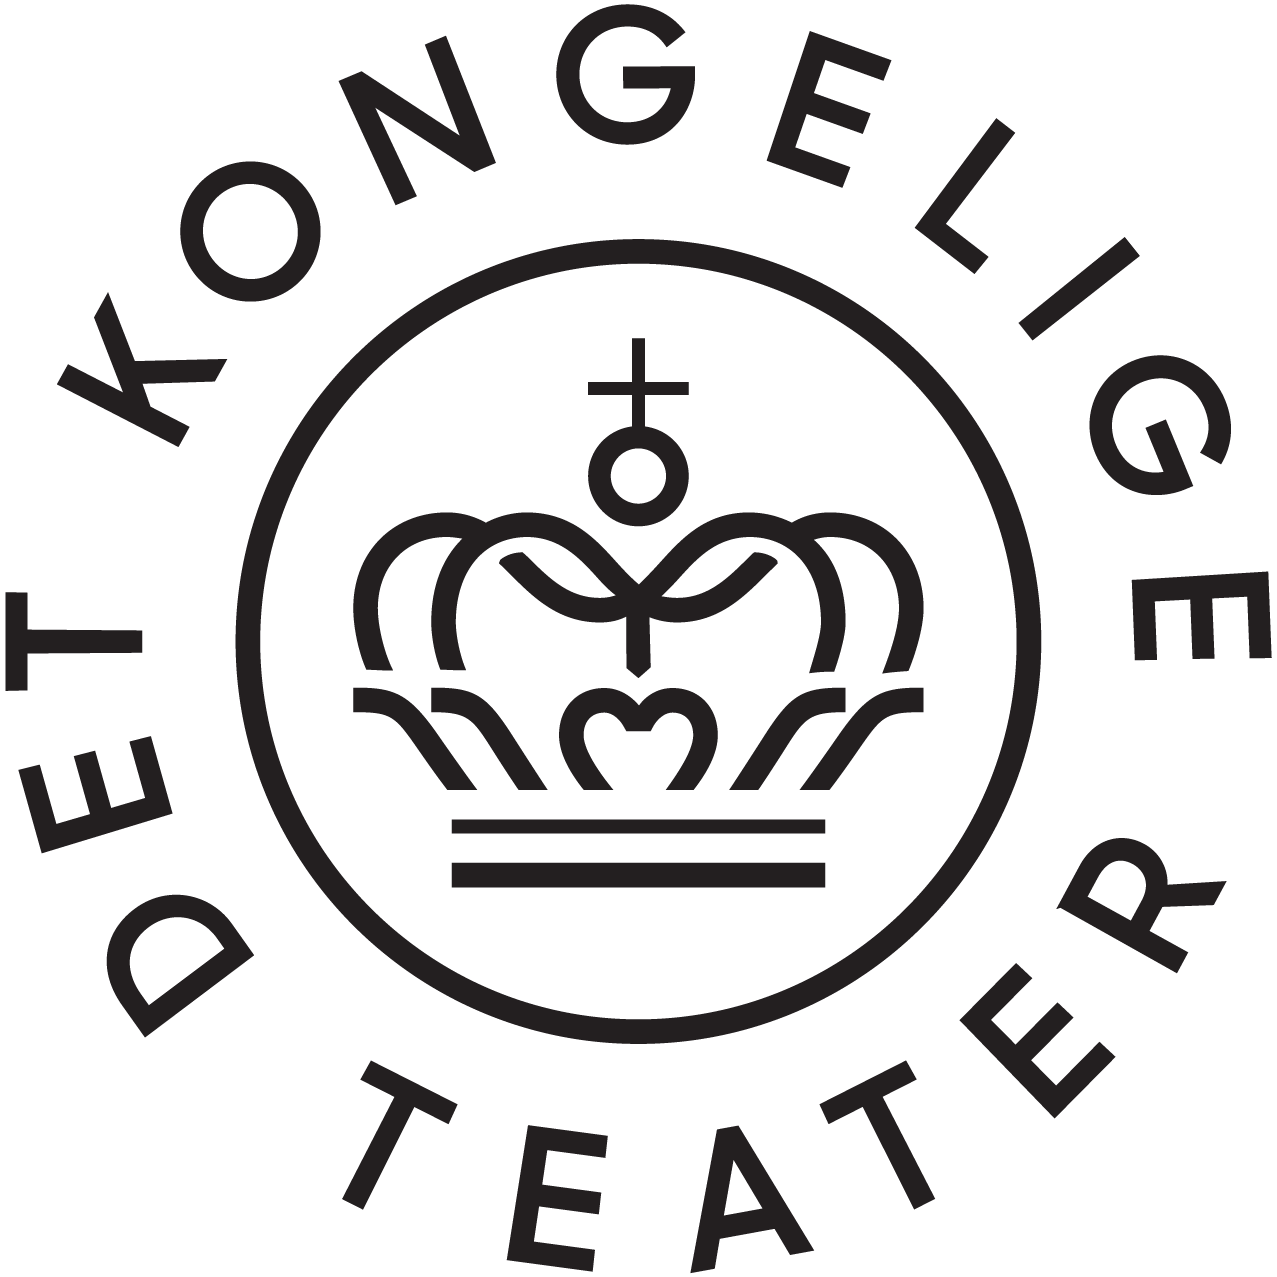 Det Kongelige Teater oversættelse